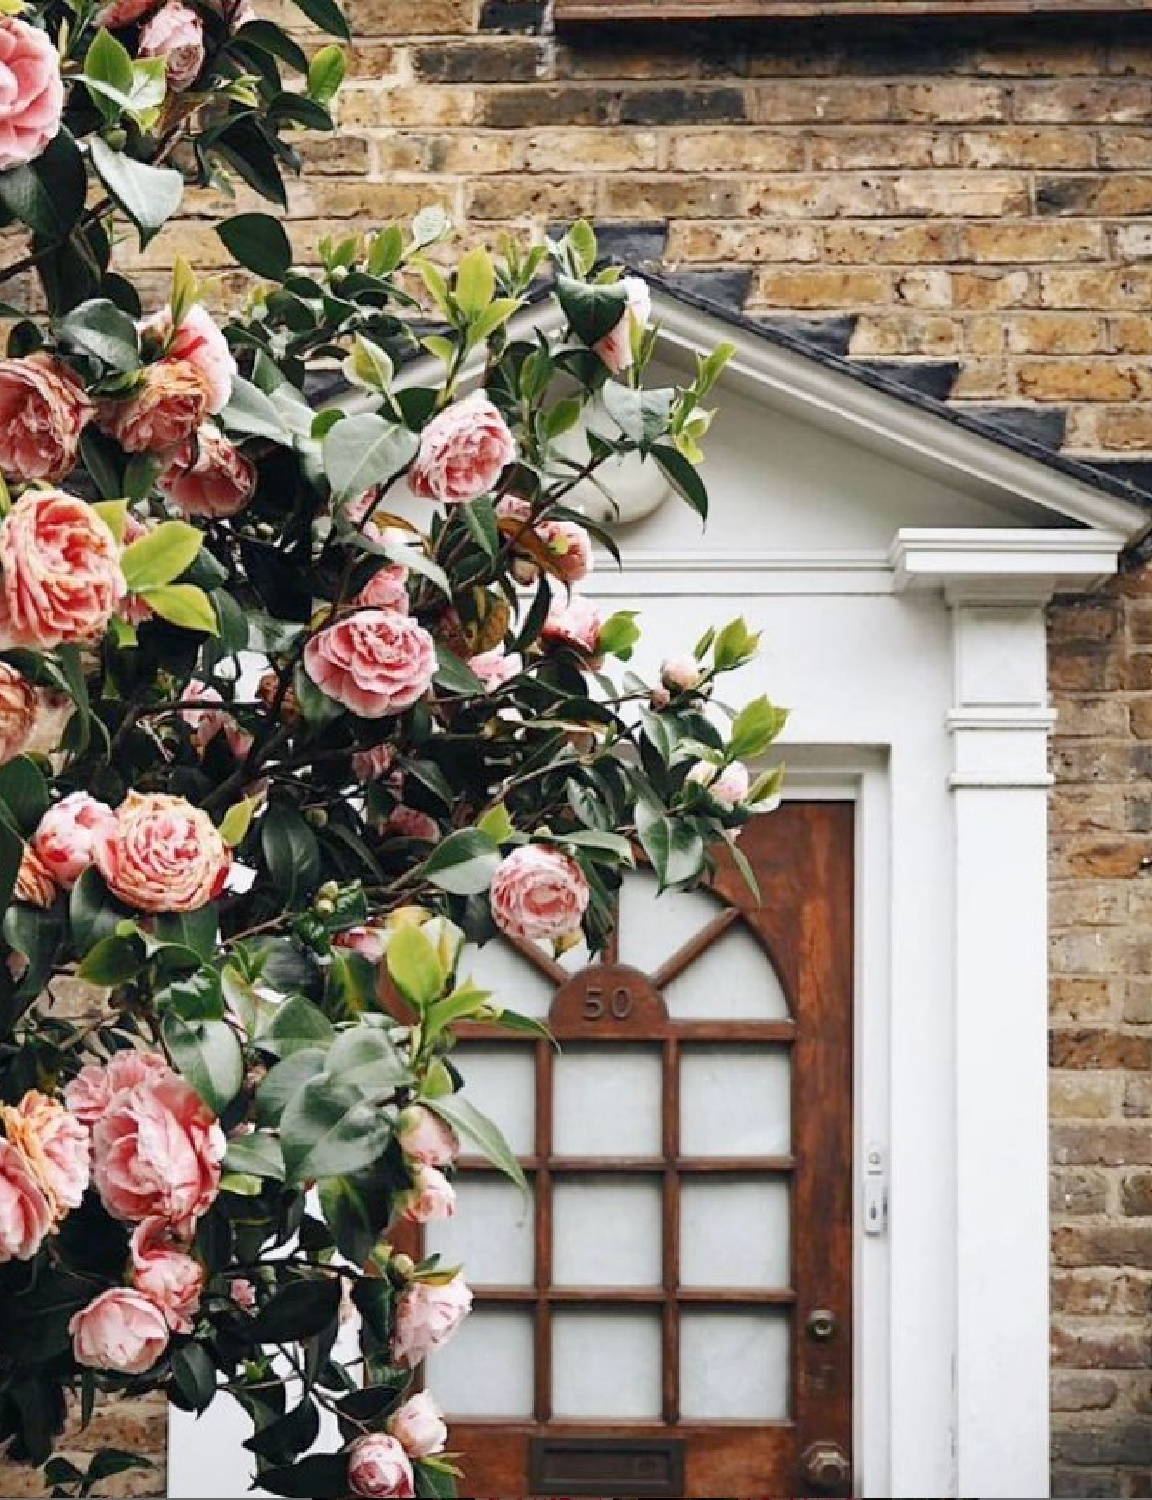 Camellia bush near beautiful front door and brick facade - Roman & Ivy. #camellia #facadelovers